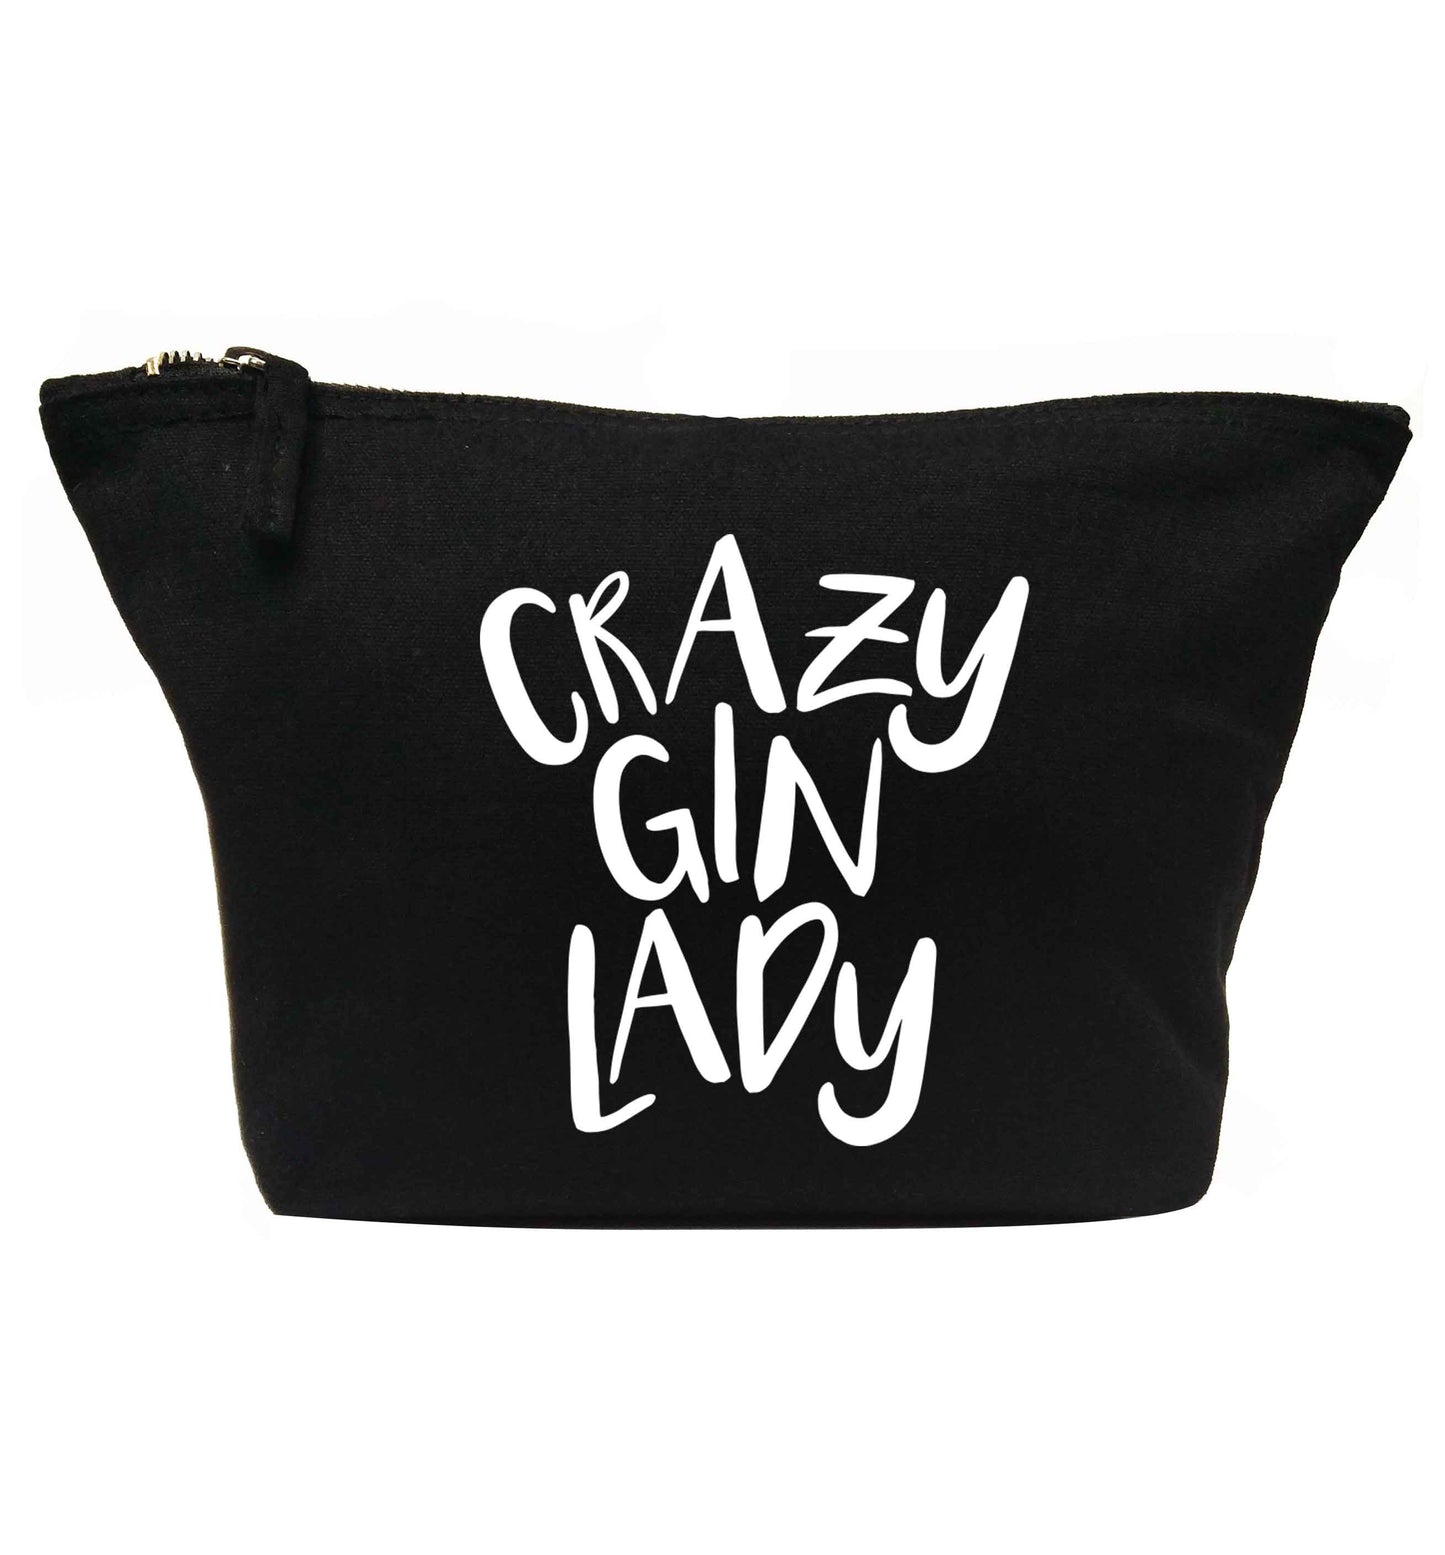 Crazy gin lady | makeup / wash bag